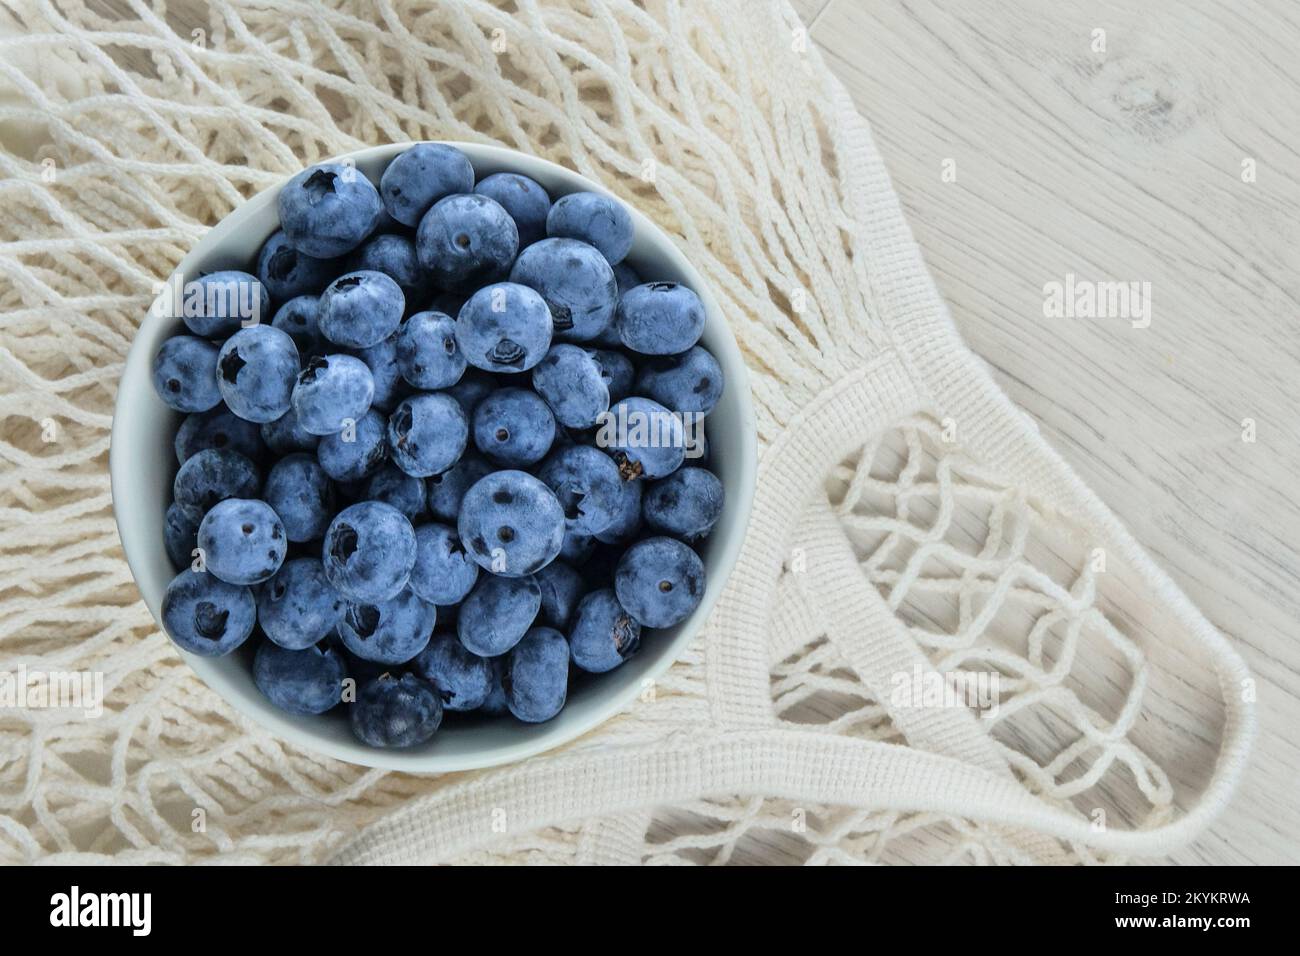 Reife Blaubeere im Korb auf dem Tisch. Blaubeeren antioxidative organische Superfood für gesunde Ernährung. Stockfoto